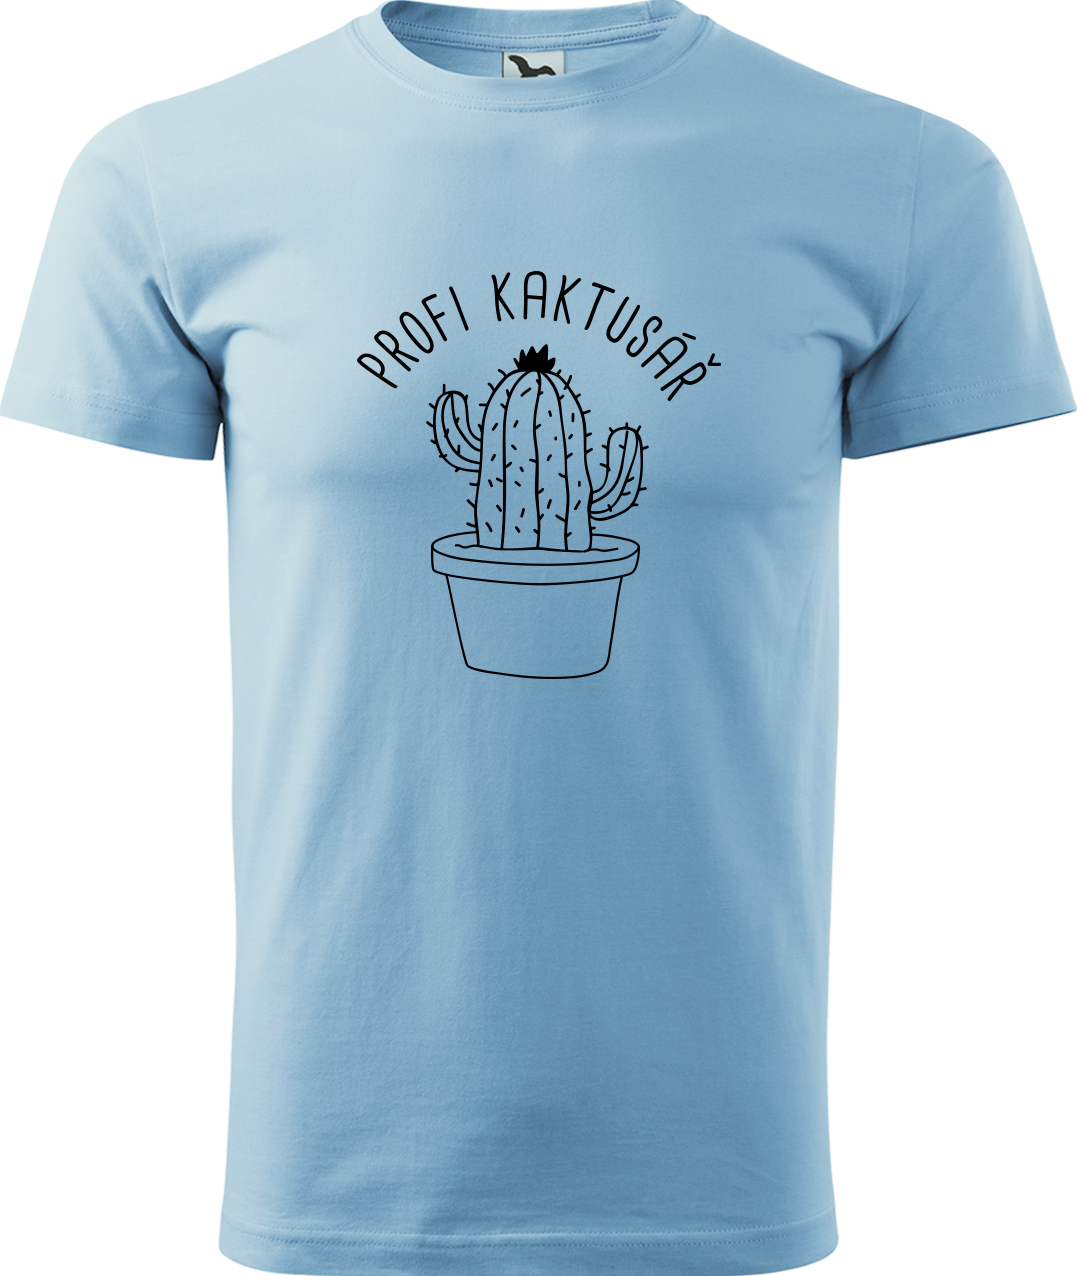 Tričko pro zahradníka - Profi kaktusář Velikost: M, Barva: Nebesky modrá (15), Střih: pánský